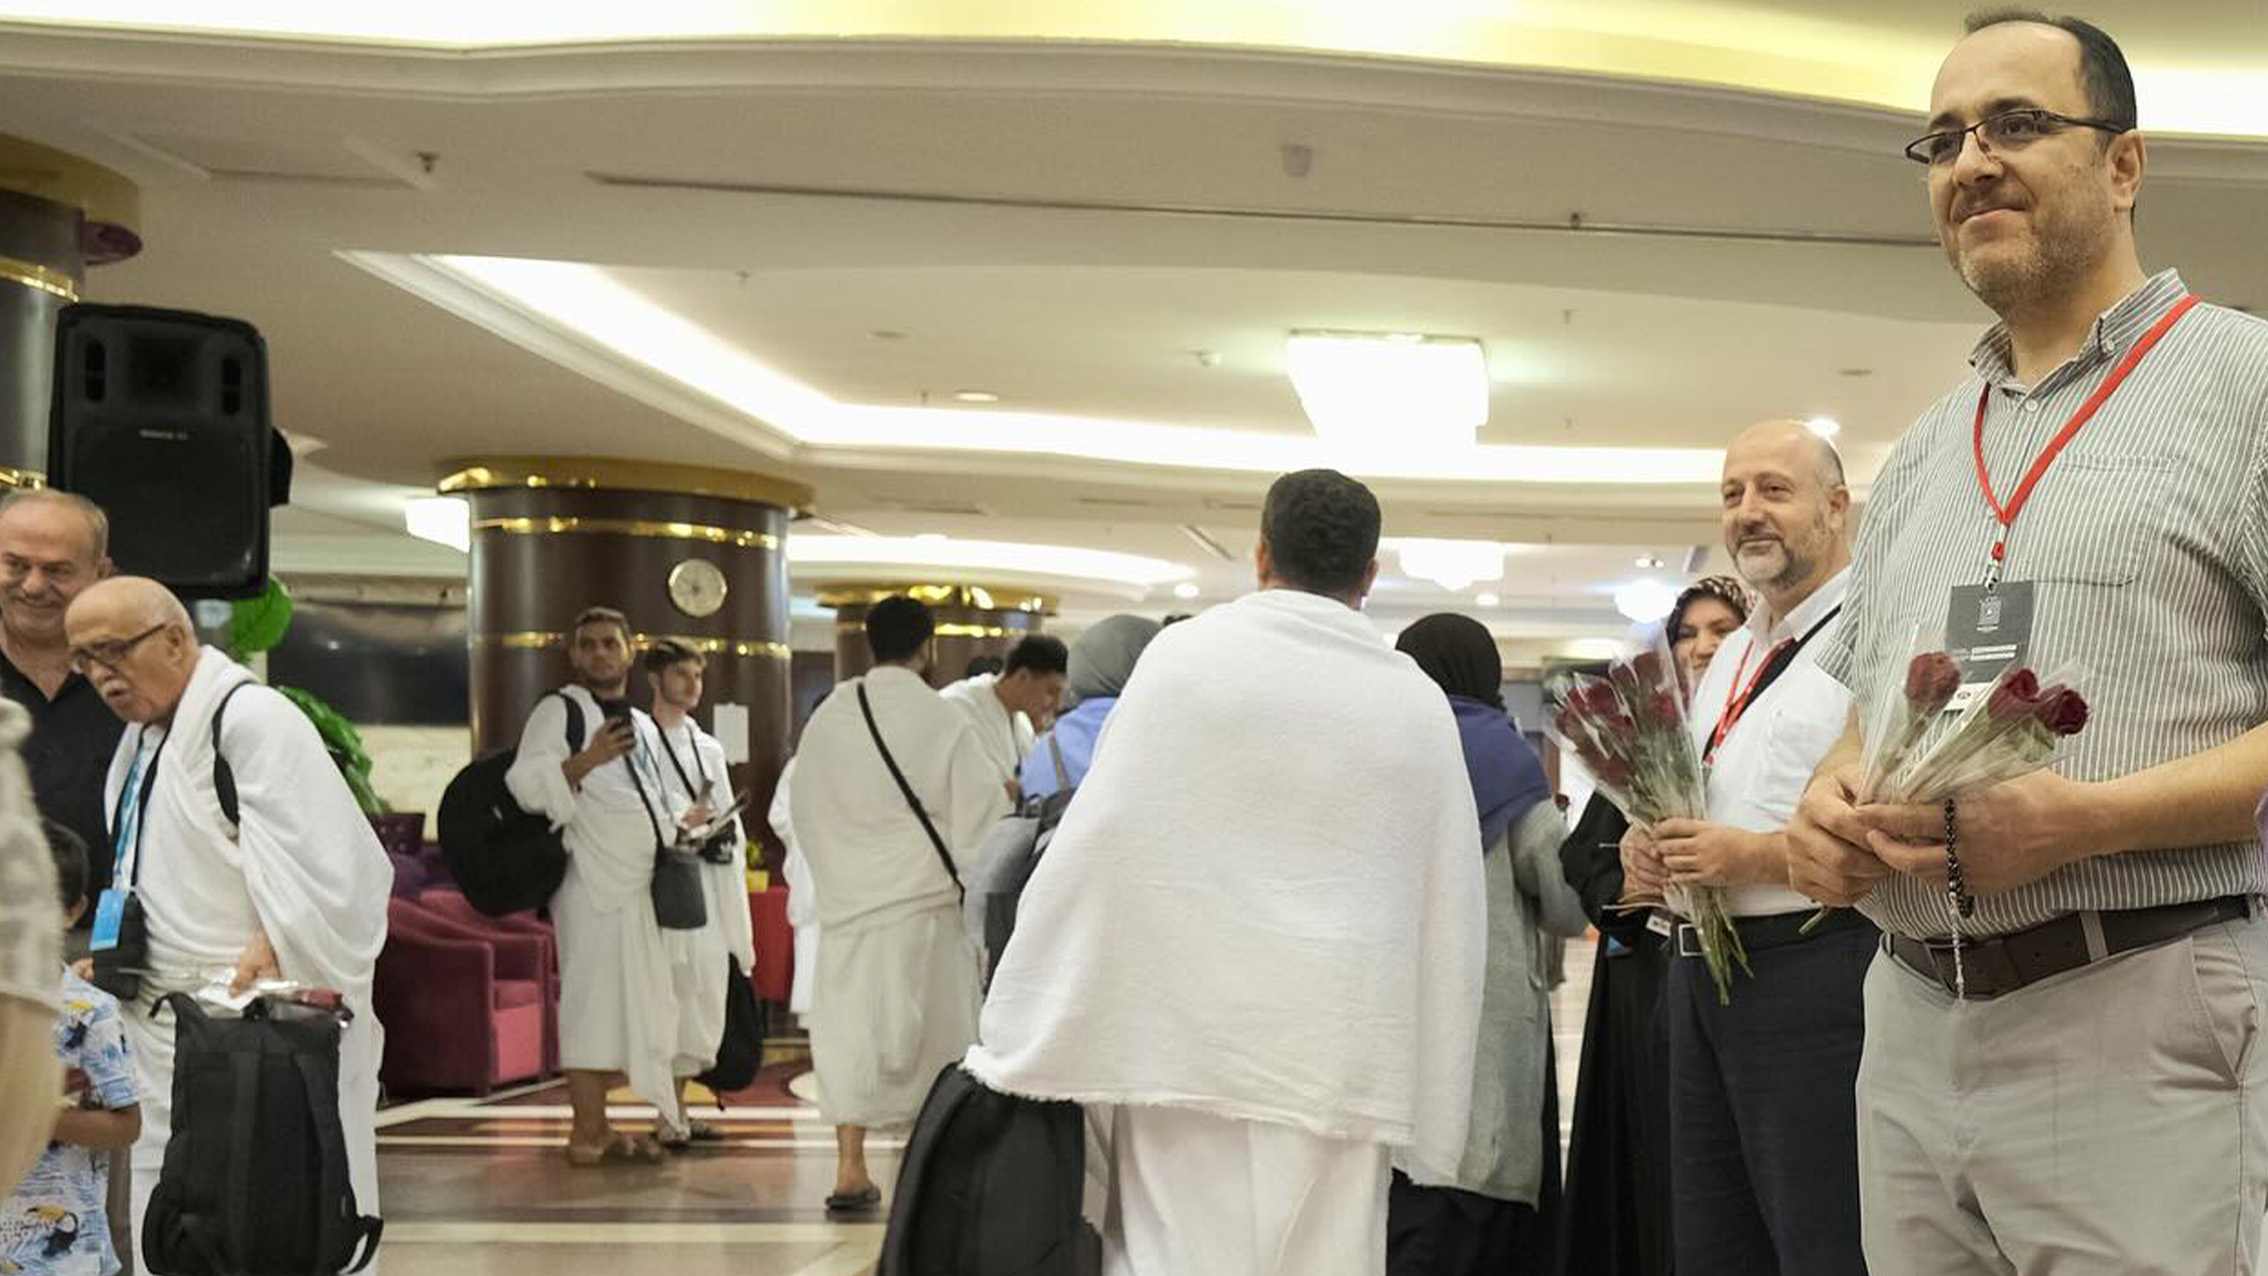 DİTİB umrecileri uzun yolculuktan sonra Mekke'de sıcak bir karşılama